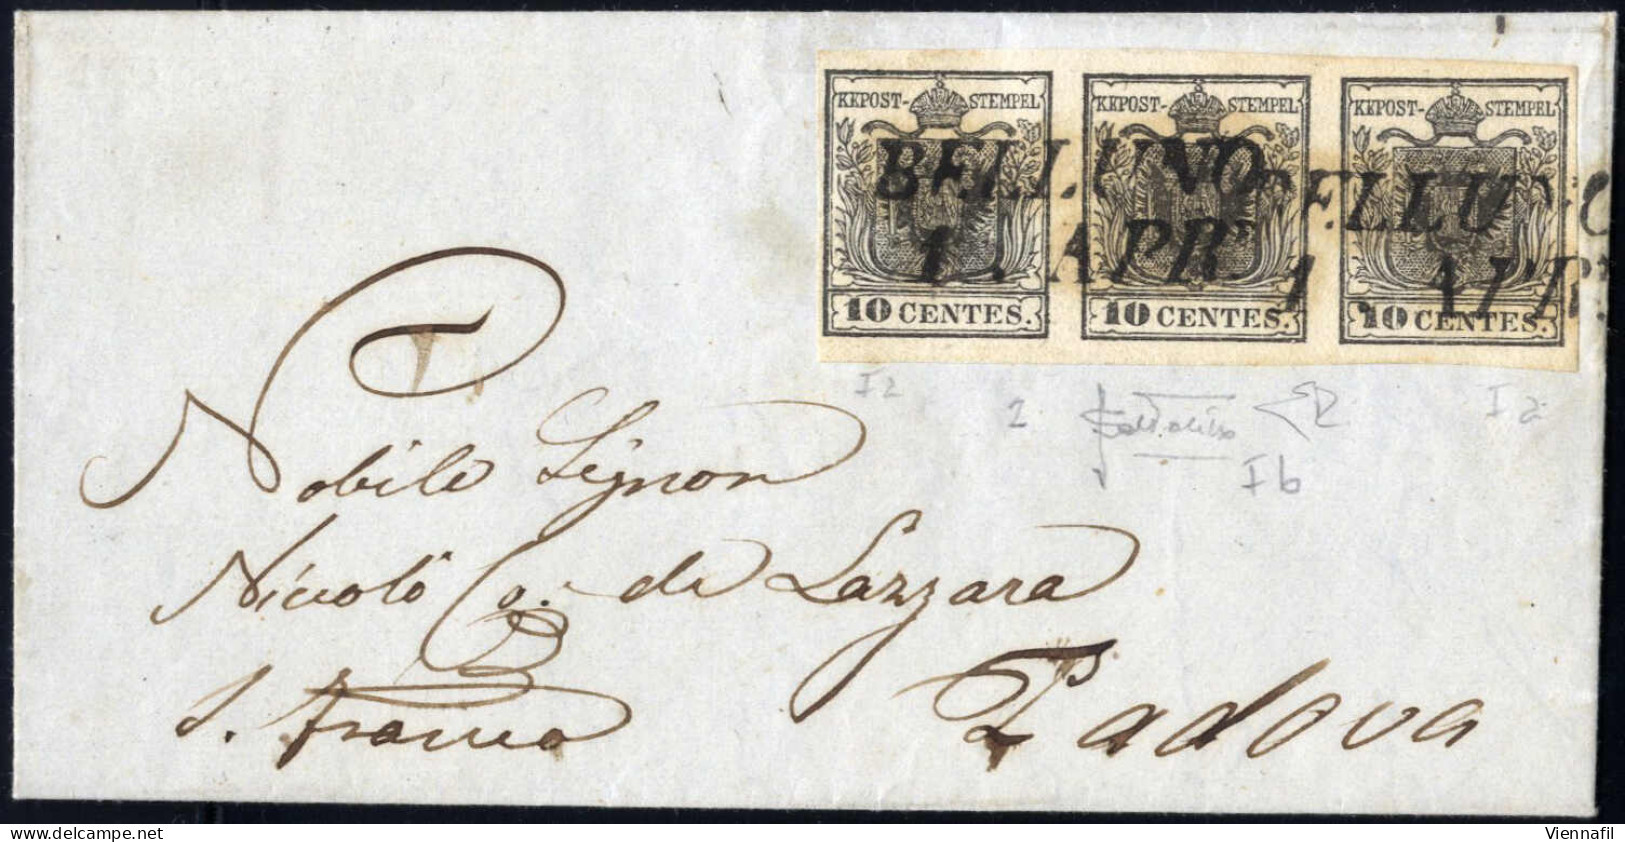 Cover 1853, Lettera Da Belluno Del 1.4 Per Padova Affrancata Con Striscia Di Tre Del 10 C. Nero Carta A Mano Due Sottoti - Lombardy-Venetia